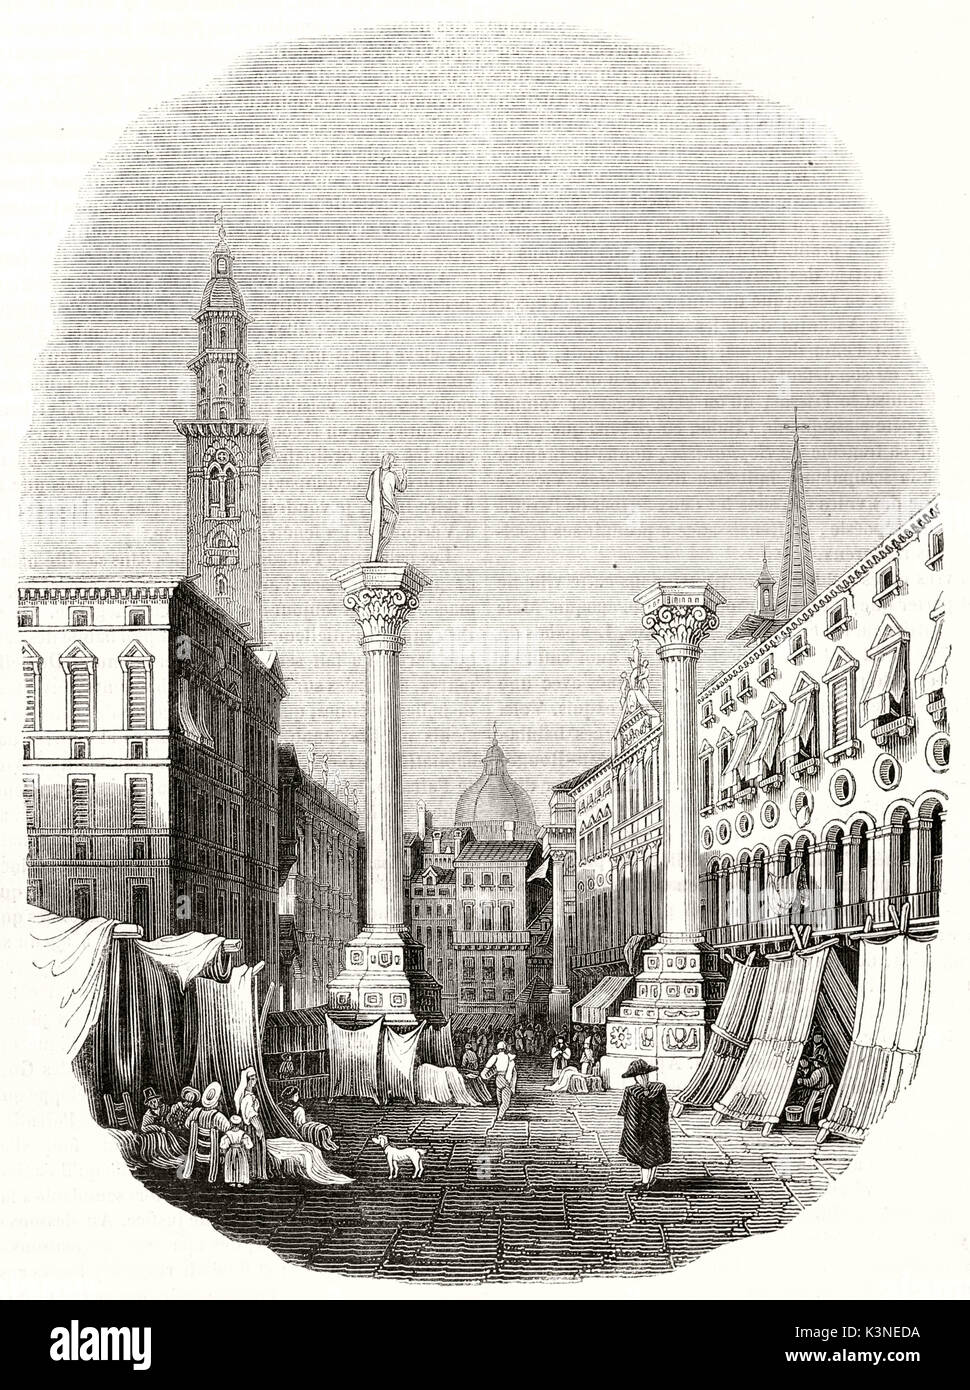 Vue ancienne de la Piazza dei Signori (Lord's square) Vicenza Italie, illustration disposés dans un cadre ovale avec des bords s'est évanouie. Par auteur non identifié publié le magasin pittoresque Paris 1839 Banque D'Images